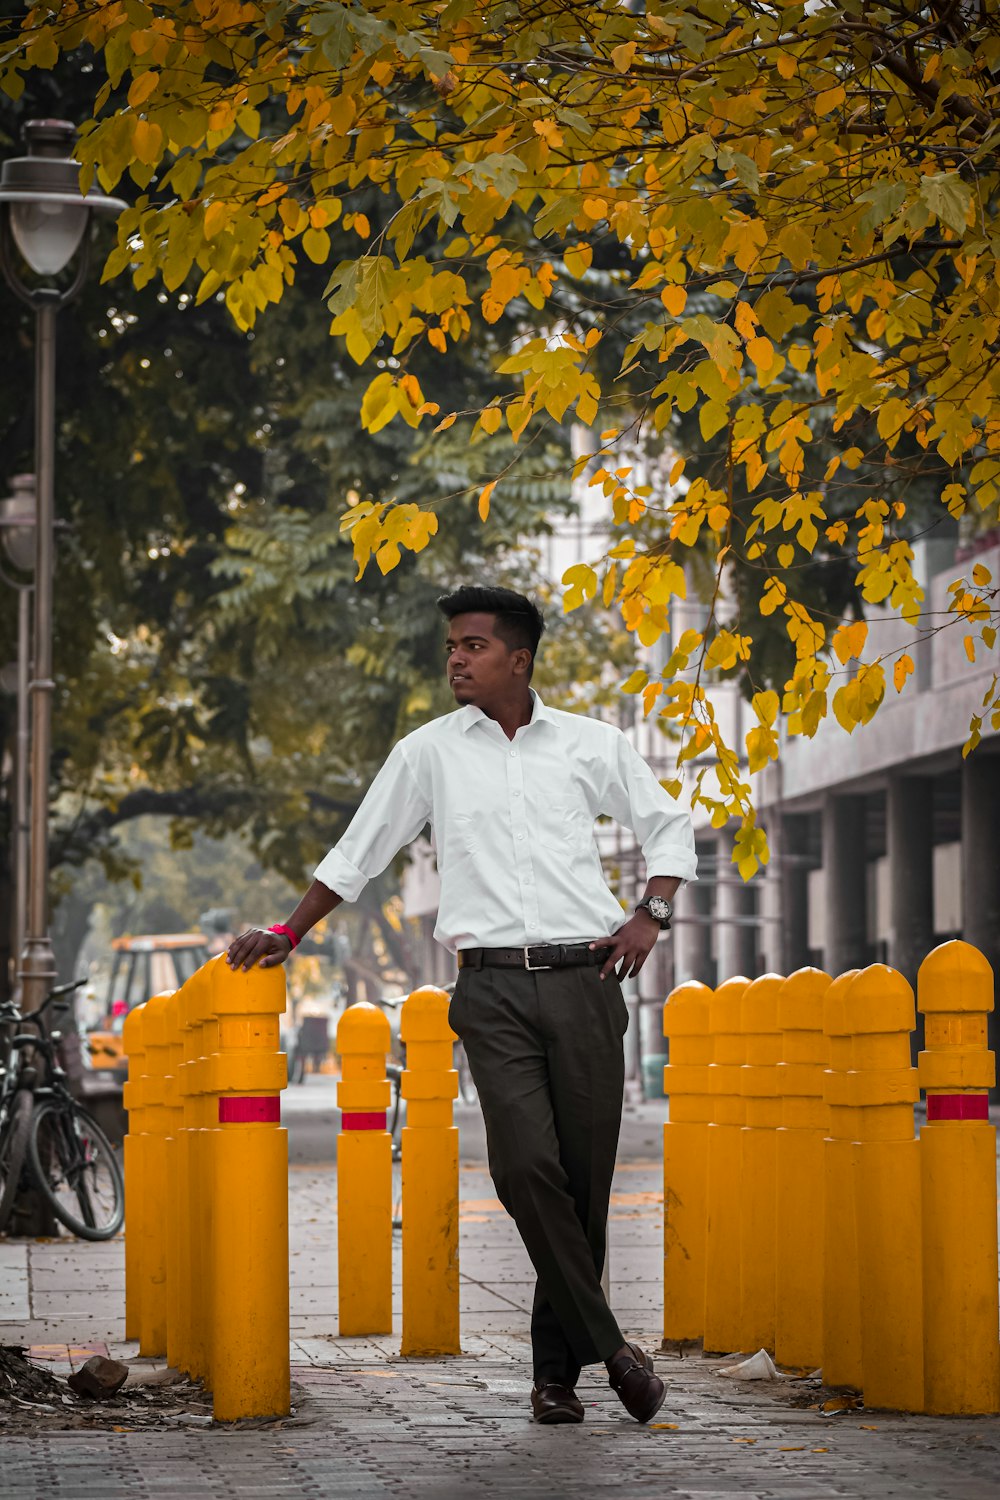 Hombre con camisa de vestir blanca y pantalones negros de pie cerca de contenedores de basura de plástico amarillo durante el día